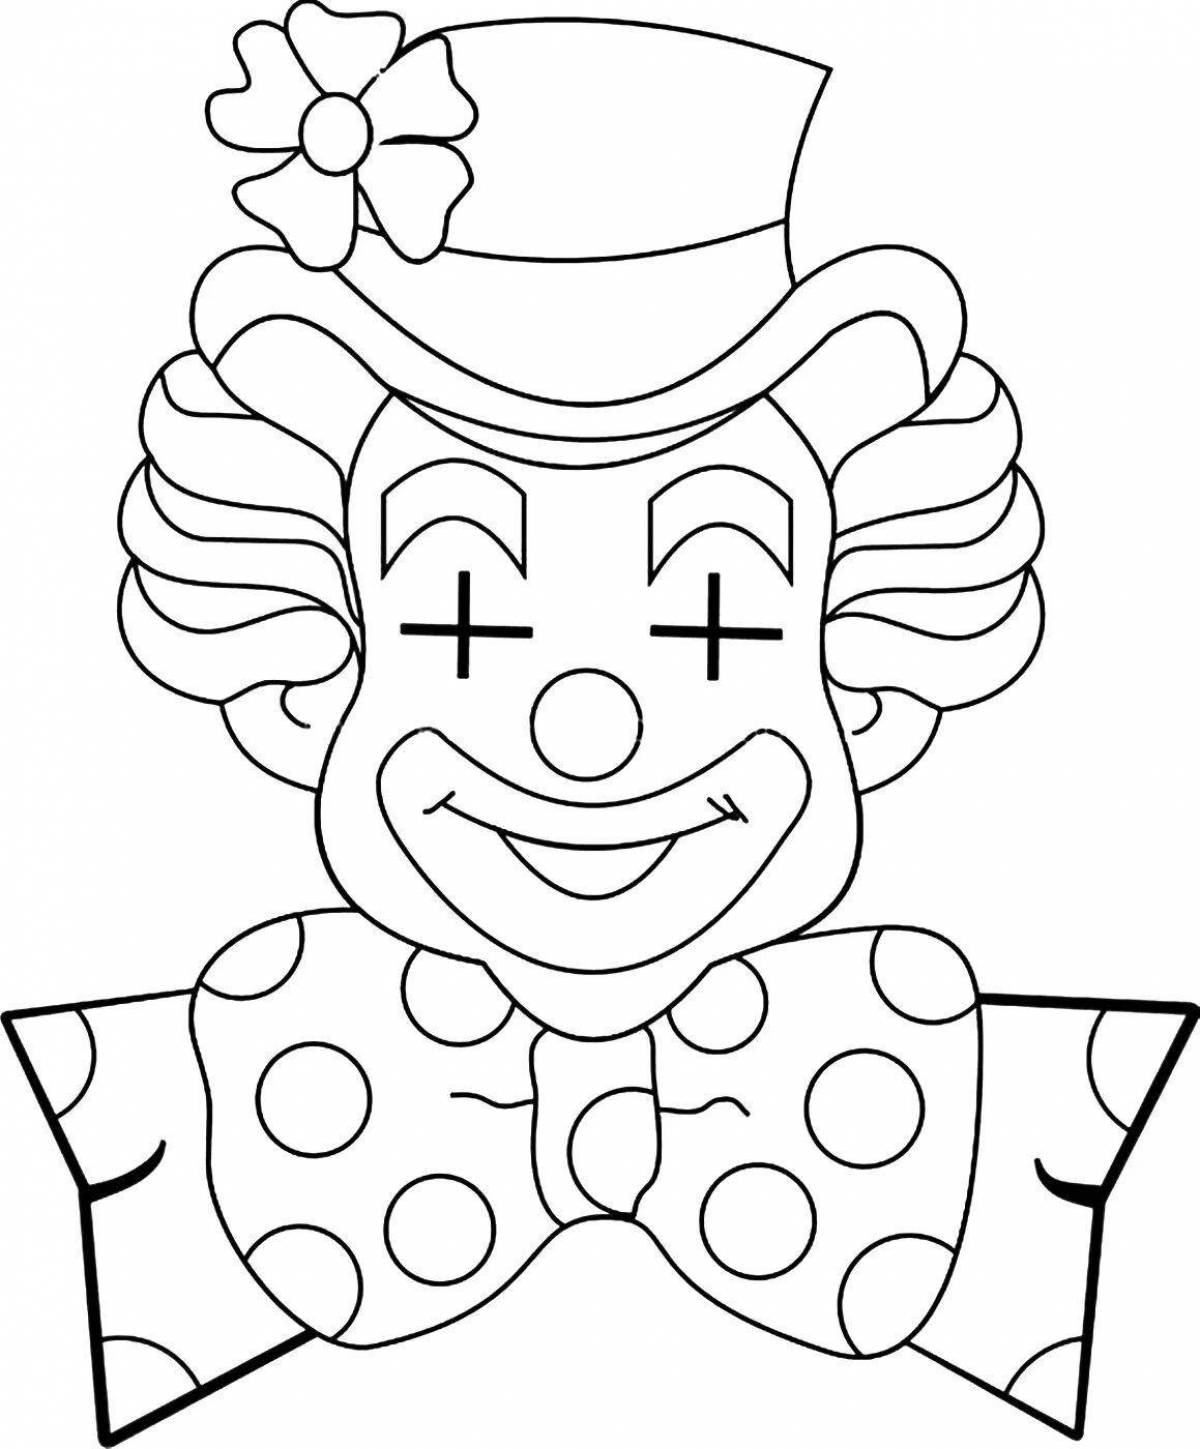 Маска клоуна для детей распечатать. Клоун раскраска. Клоун шаблон. Аппликация "клоун". Маска клоун раскраска для детей.